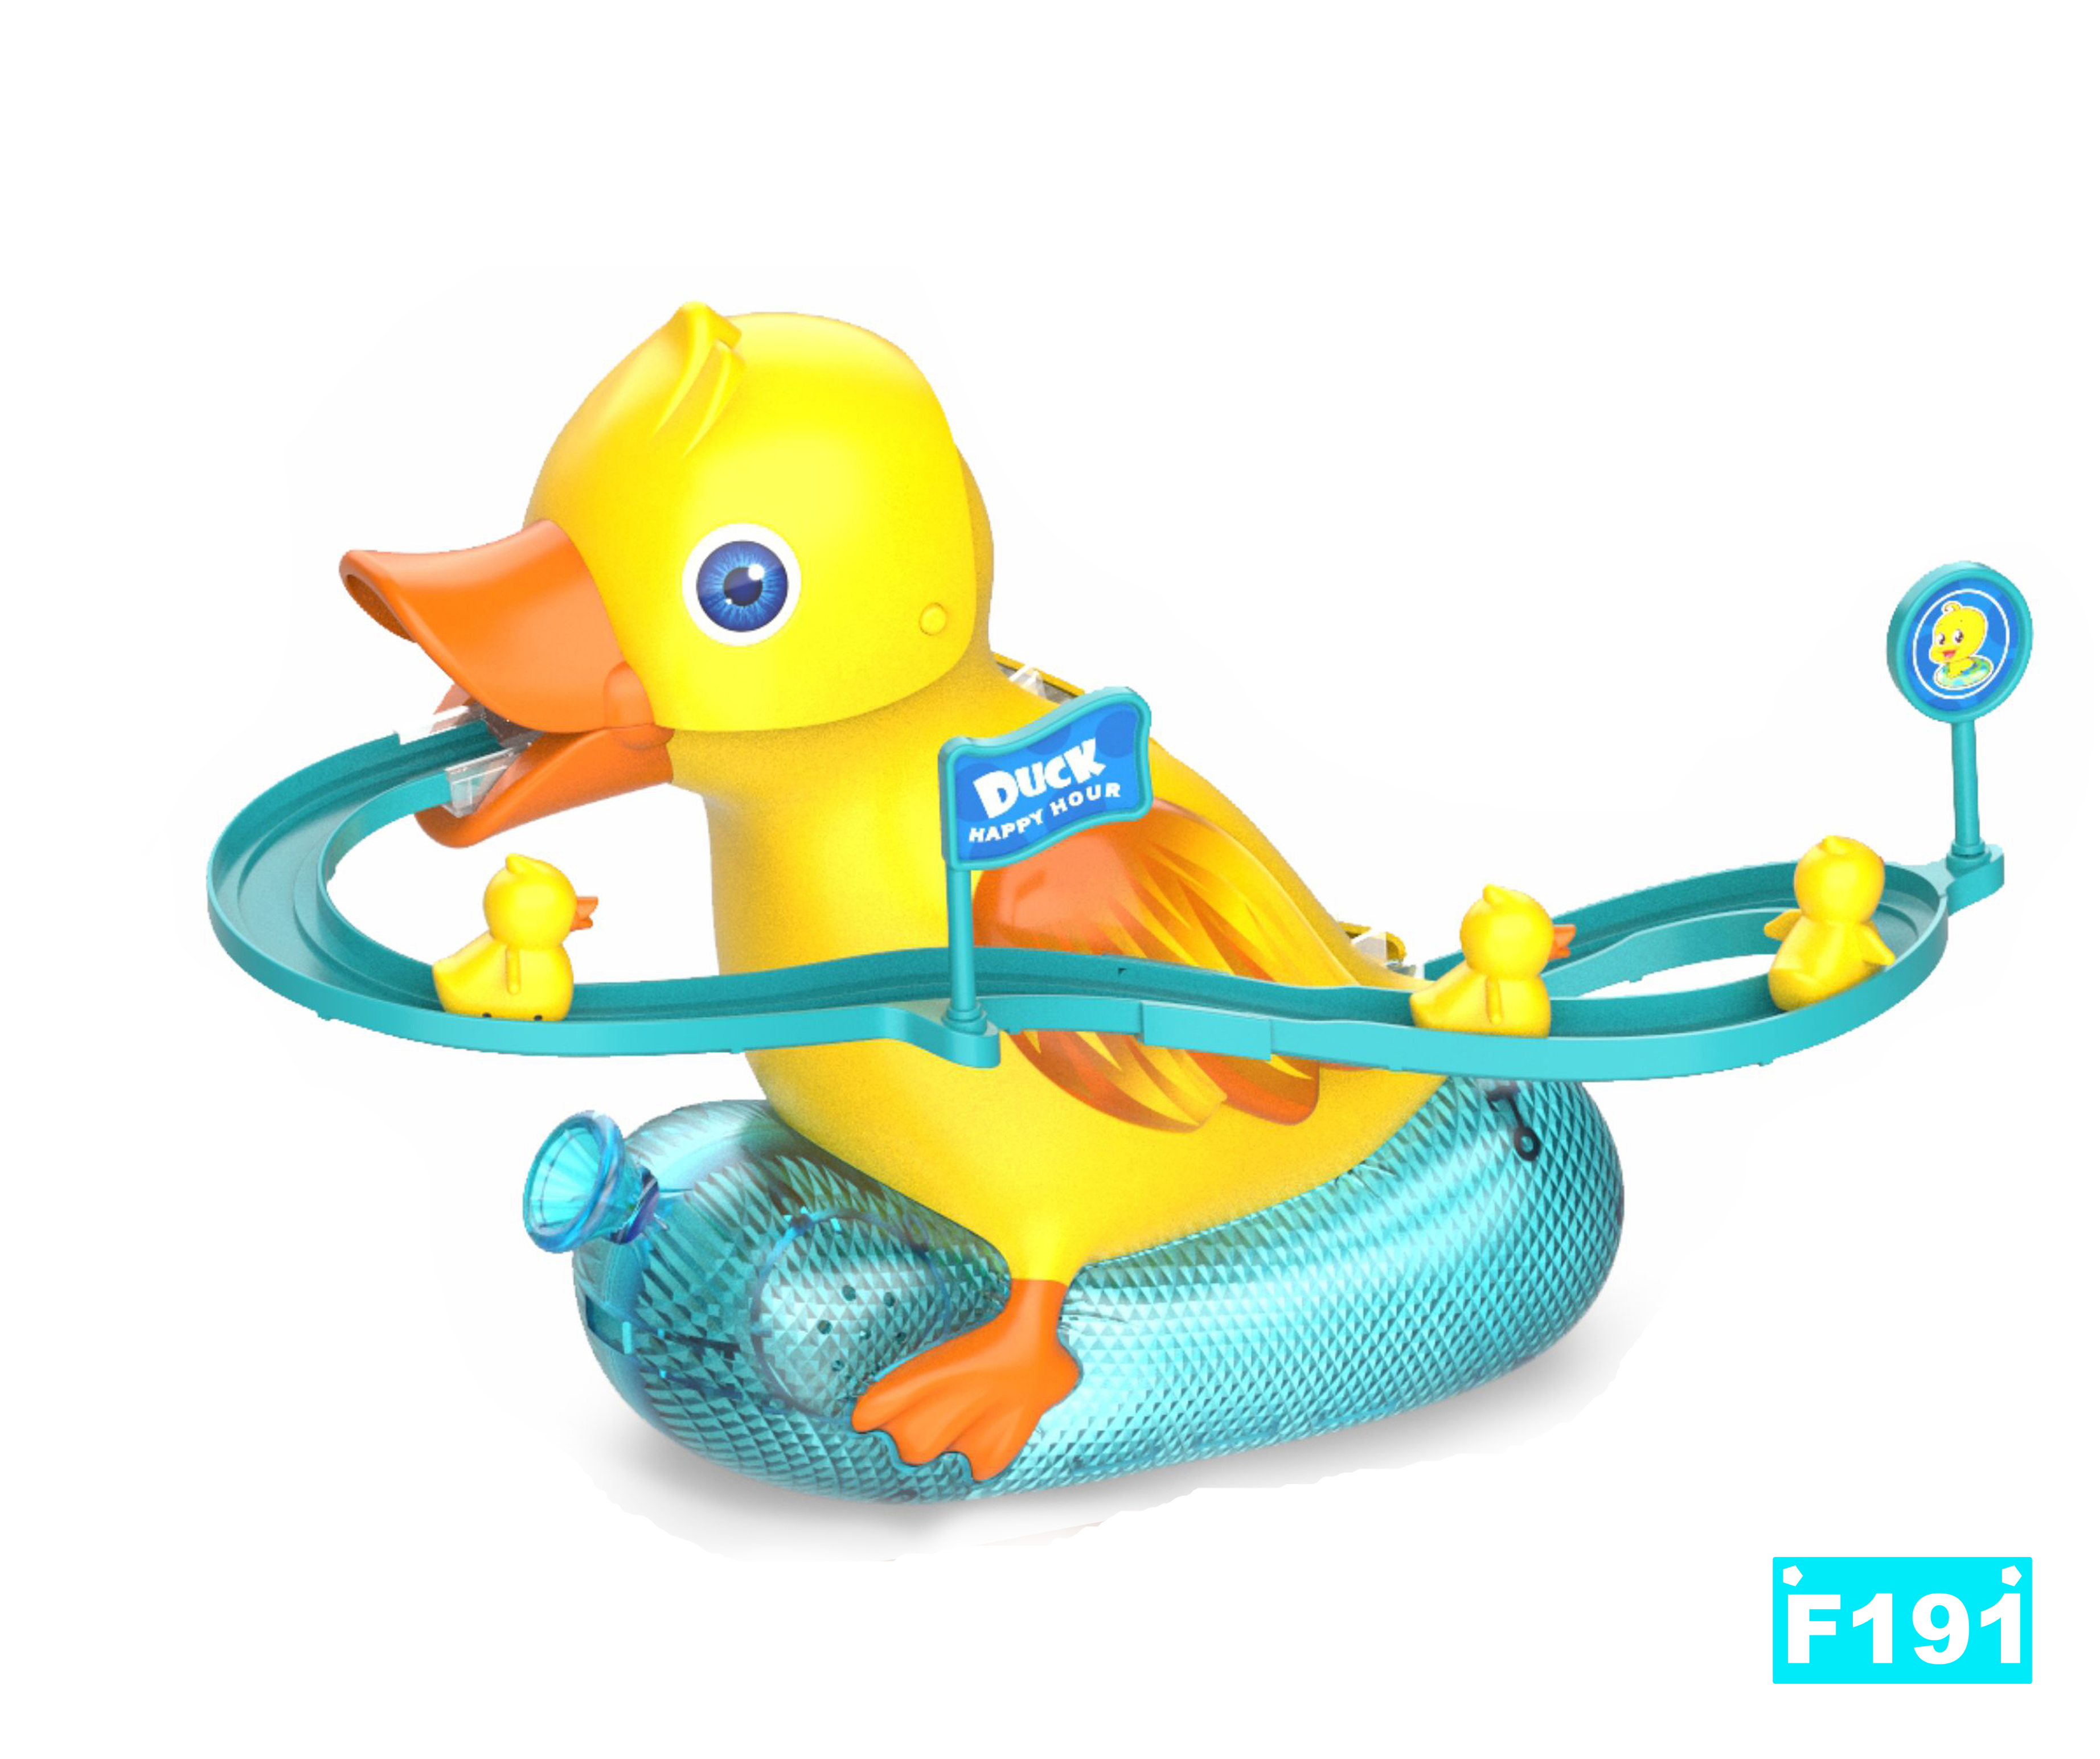 小鸭子爬楼梯 鸭子滑梯轨道玩具 外贸玩具 电动玩具 智能玩具 TOYS 小黄鸭玩具 JUGUETE详情1